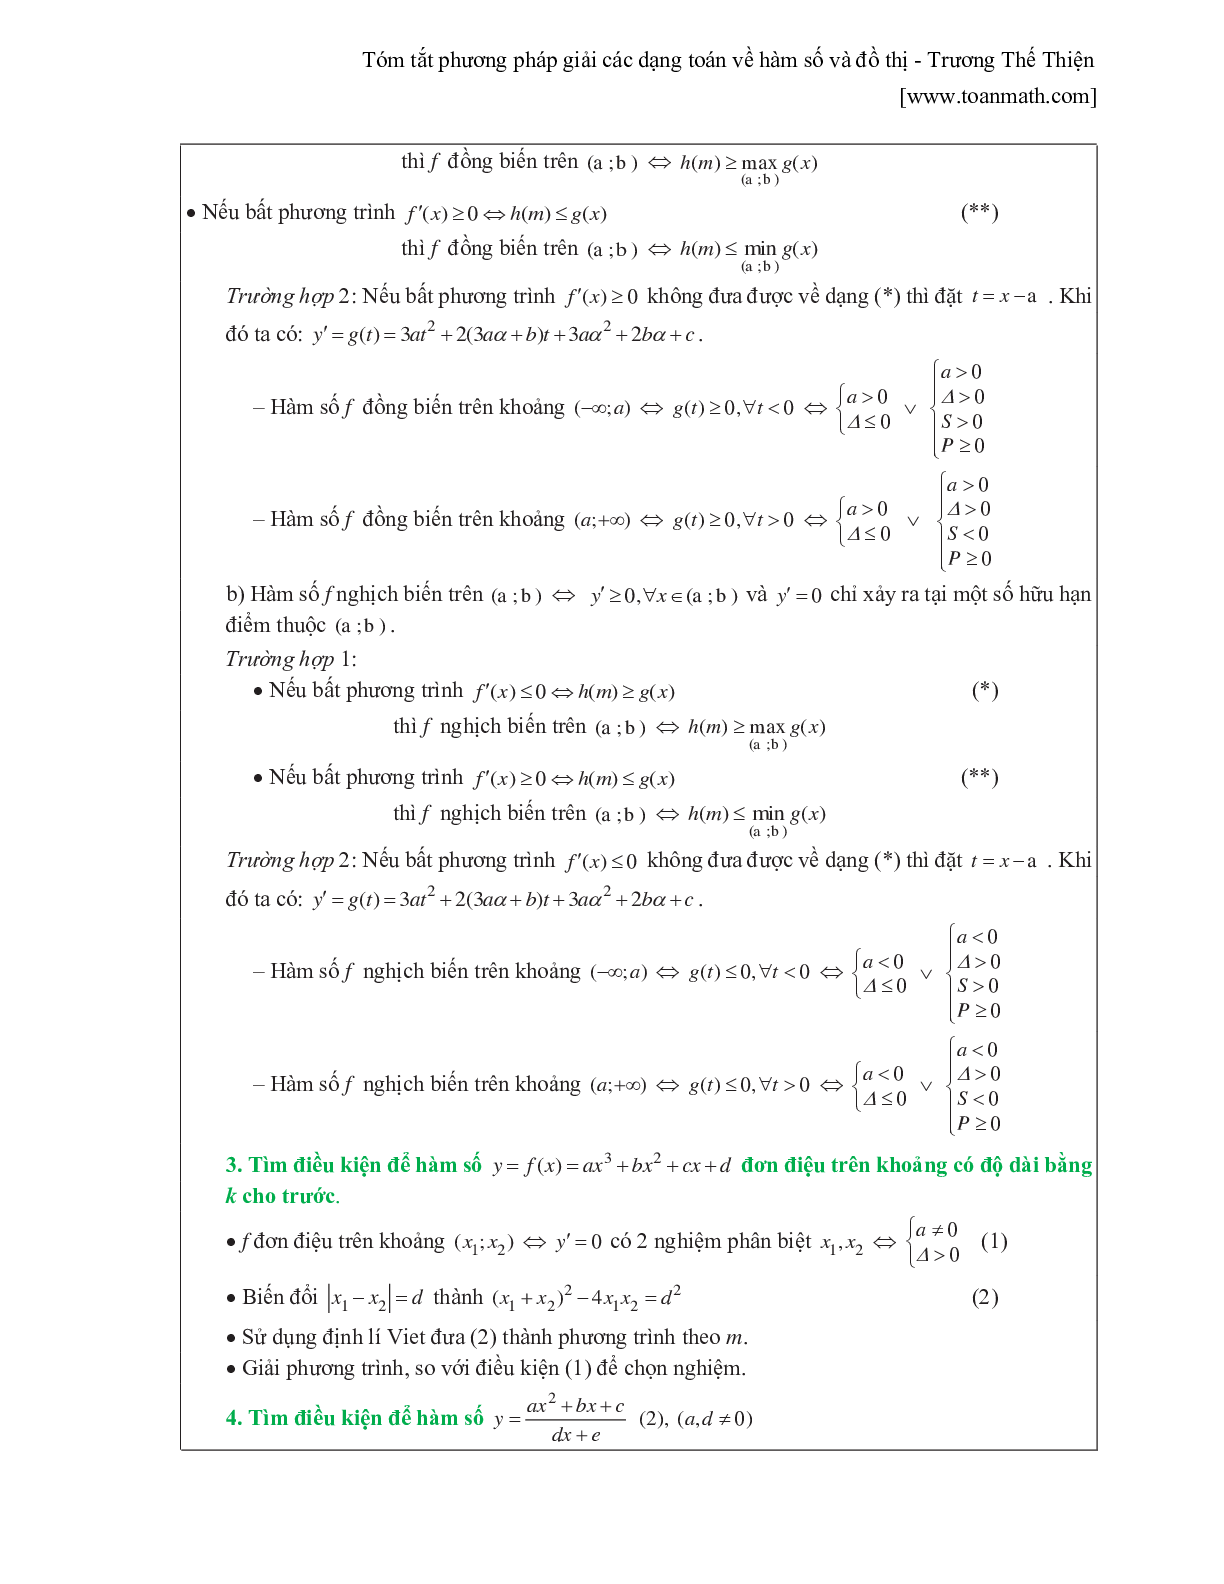 Tóm tắt phương pháp giải các dạng toán về hàm số và đồ thị (trang 2)